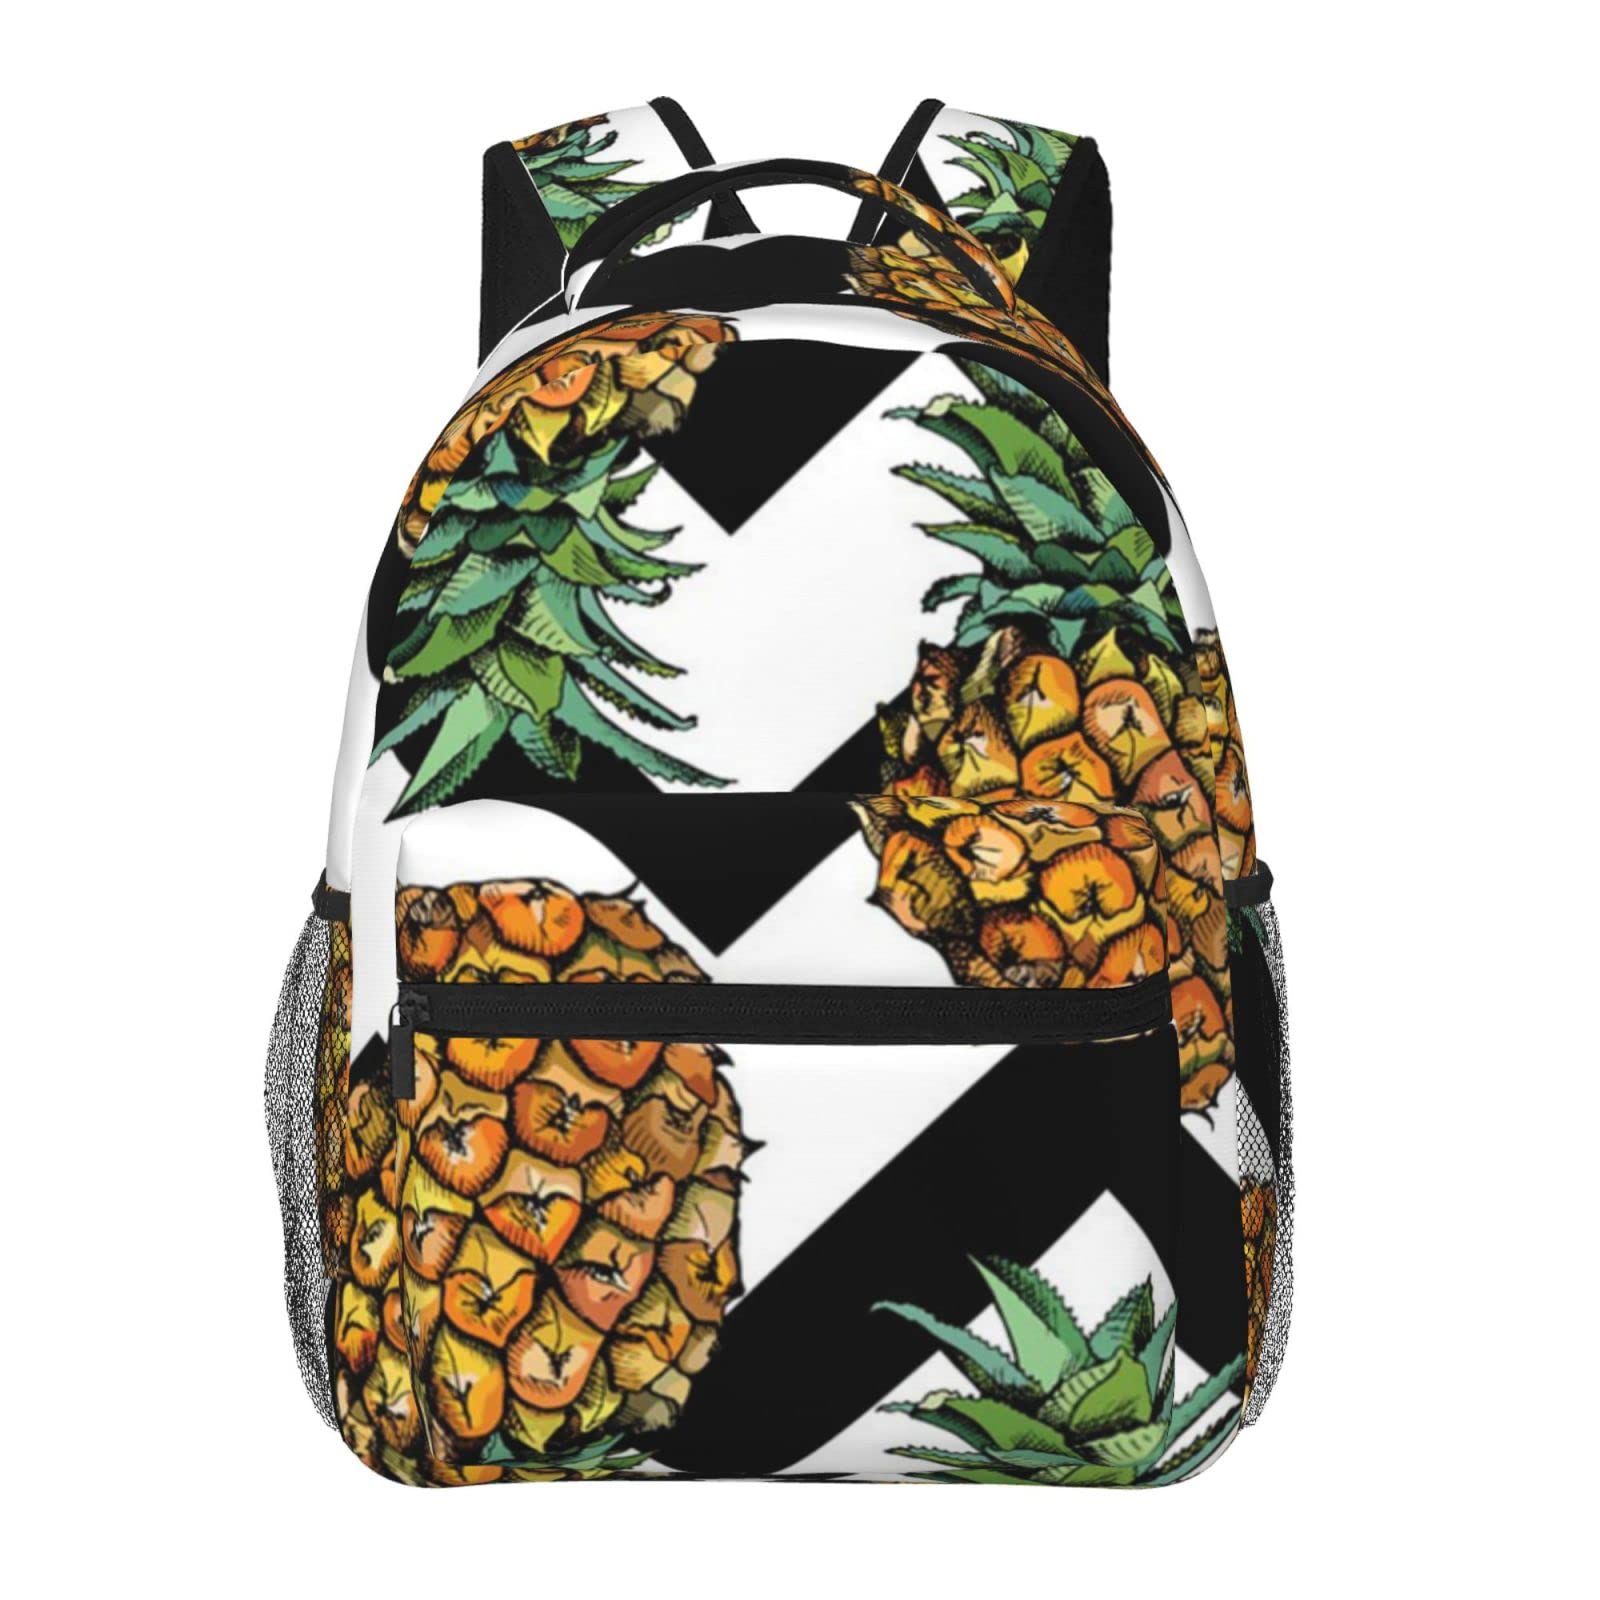 送料無料Pineapple With Black And White Striped Printed Laptop Backpack Fashion Lightweight Ergonomic Backpacks Casual Tra